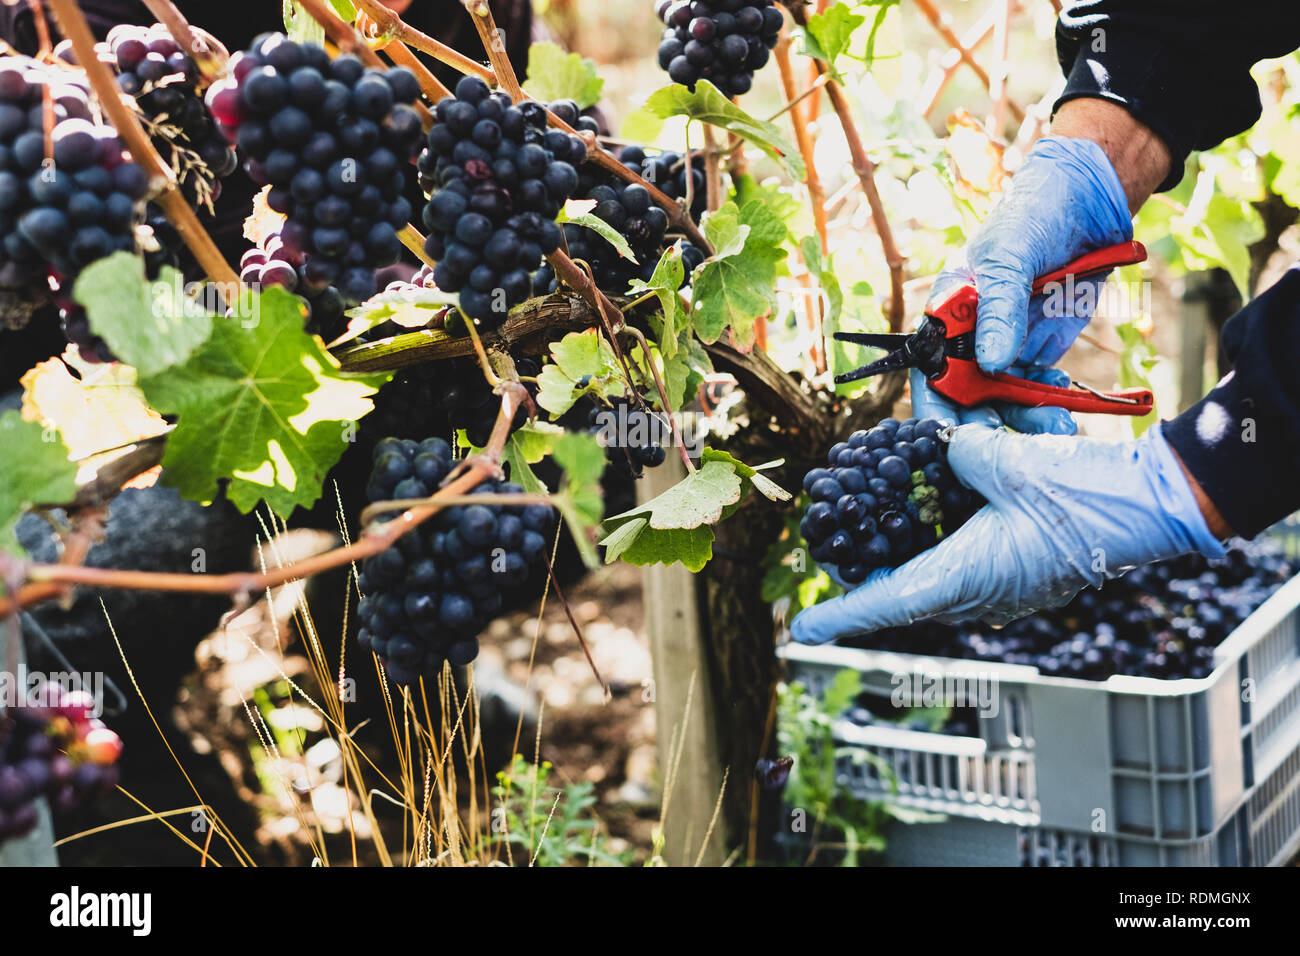 In der Nähe der person Gummihandschuhe zu tragen und halten Baumscheren Ernte Trauben von schwarzen Trauben im Weinberg. Stockfoto